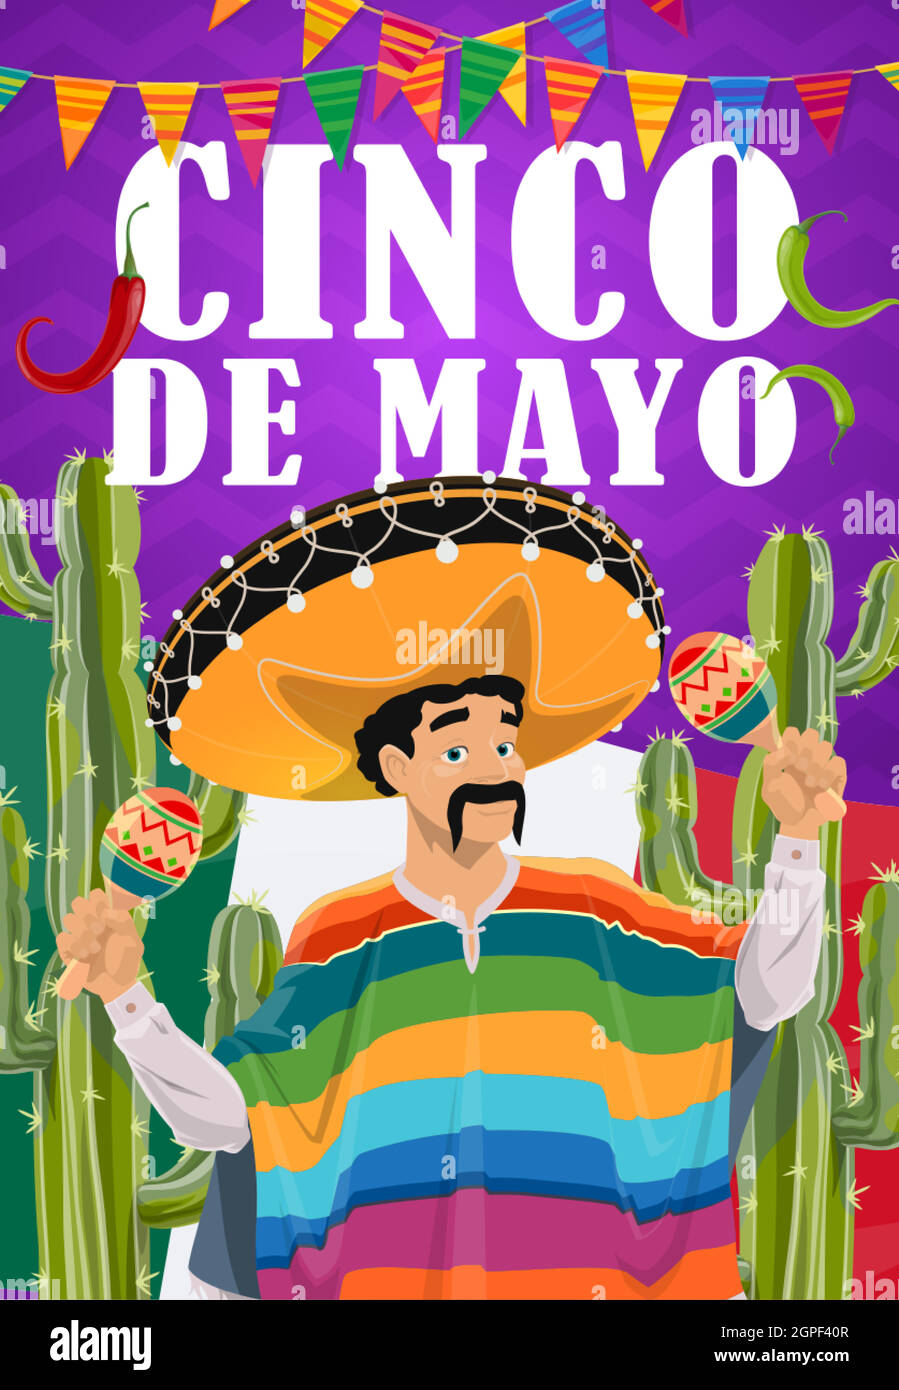 Cinco de Mayo mariachi, sombrero and maracas Stock Vector